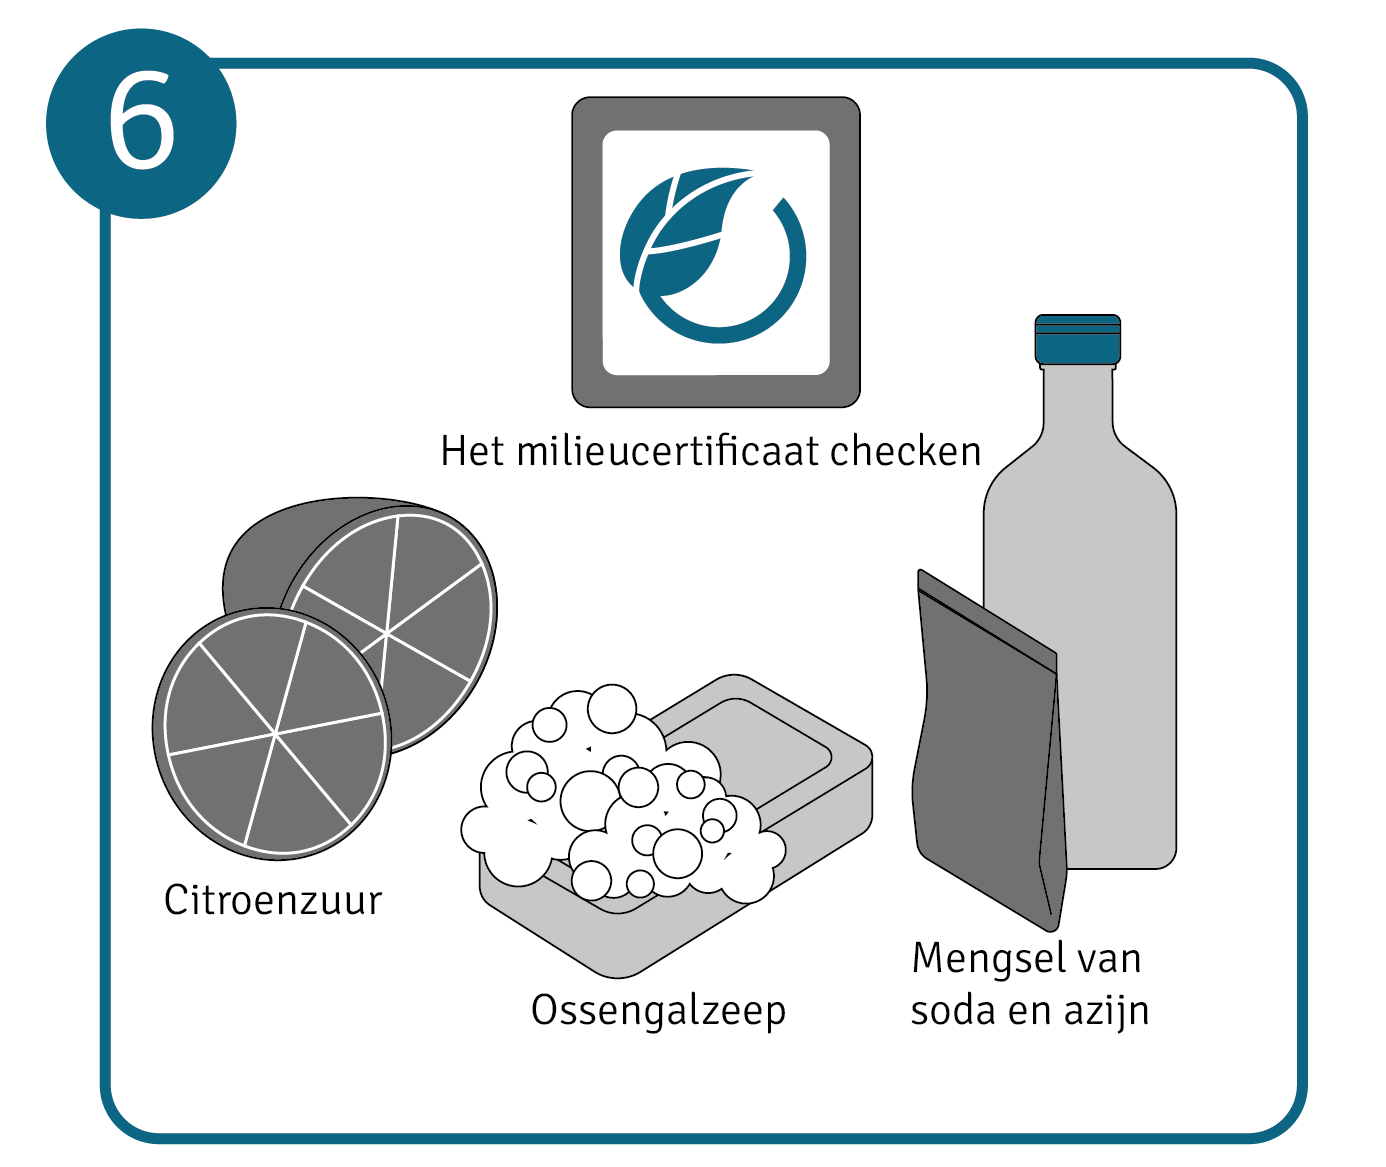 Stap 6: gebruik duurzame schoonmaakmiddelen